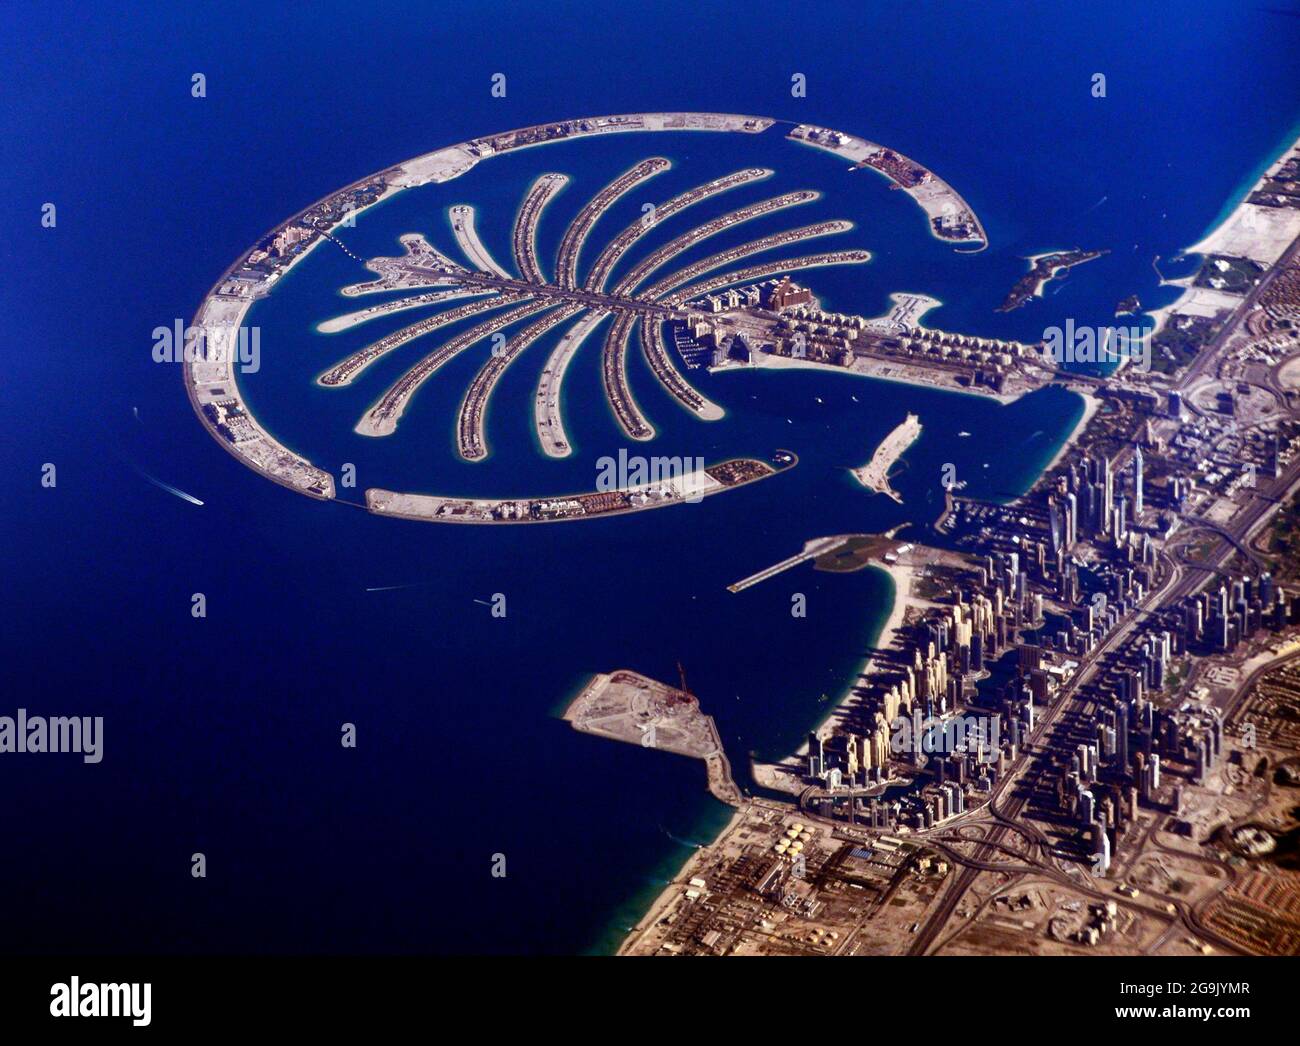 An Aerial view of Dubai's Palm island - The Palm Jumeirah. Stock Photo